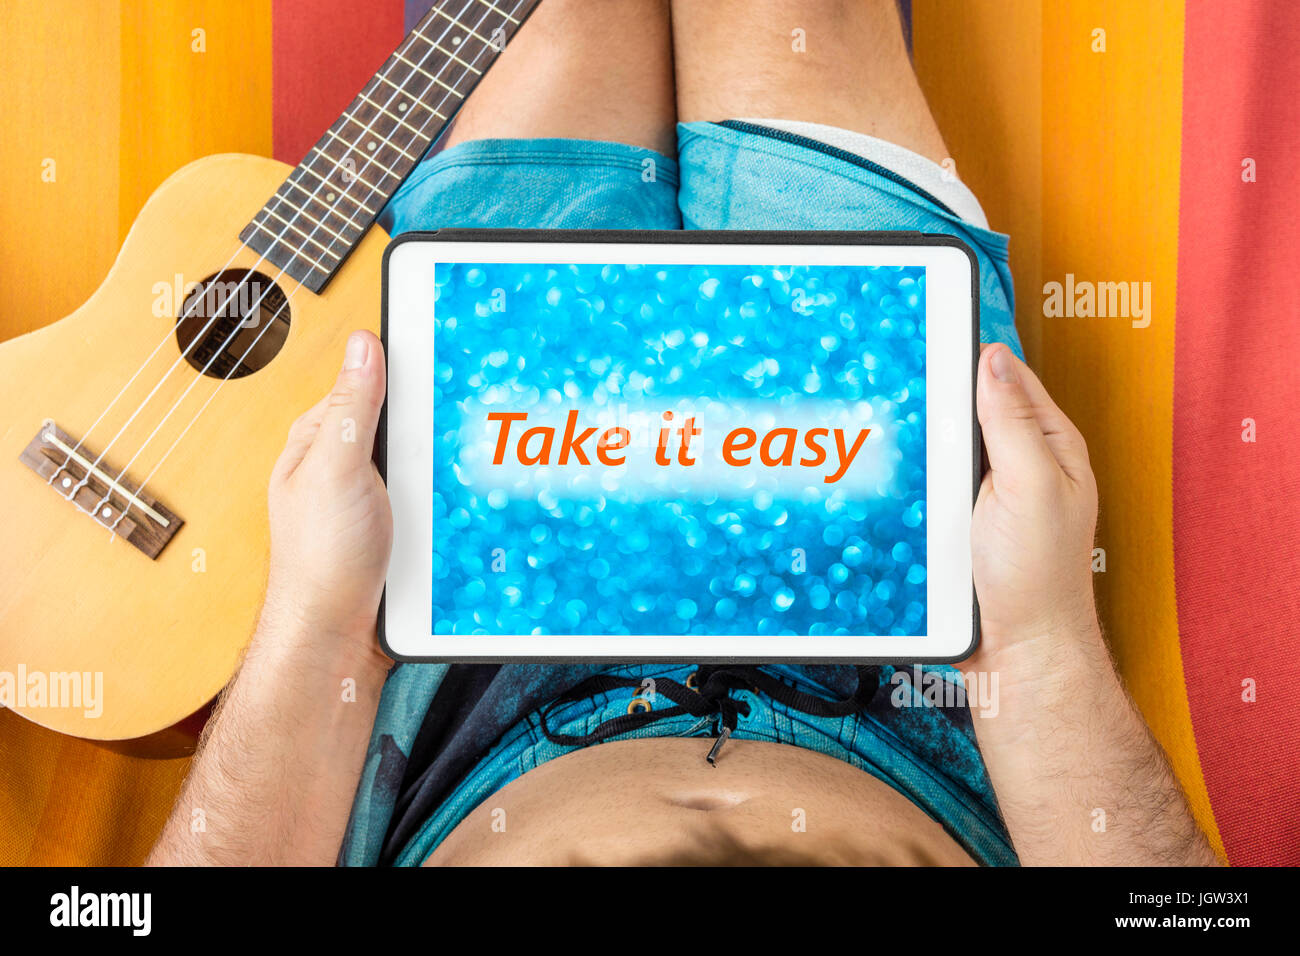 Giovane uomo disteso su una amaca con dispositivo tablet guardando sfocato sfondo blu con la frase "Take it easy' scritto su di esso. Foto Stock